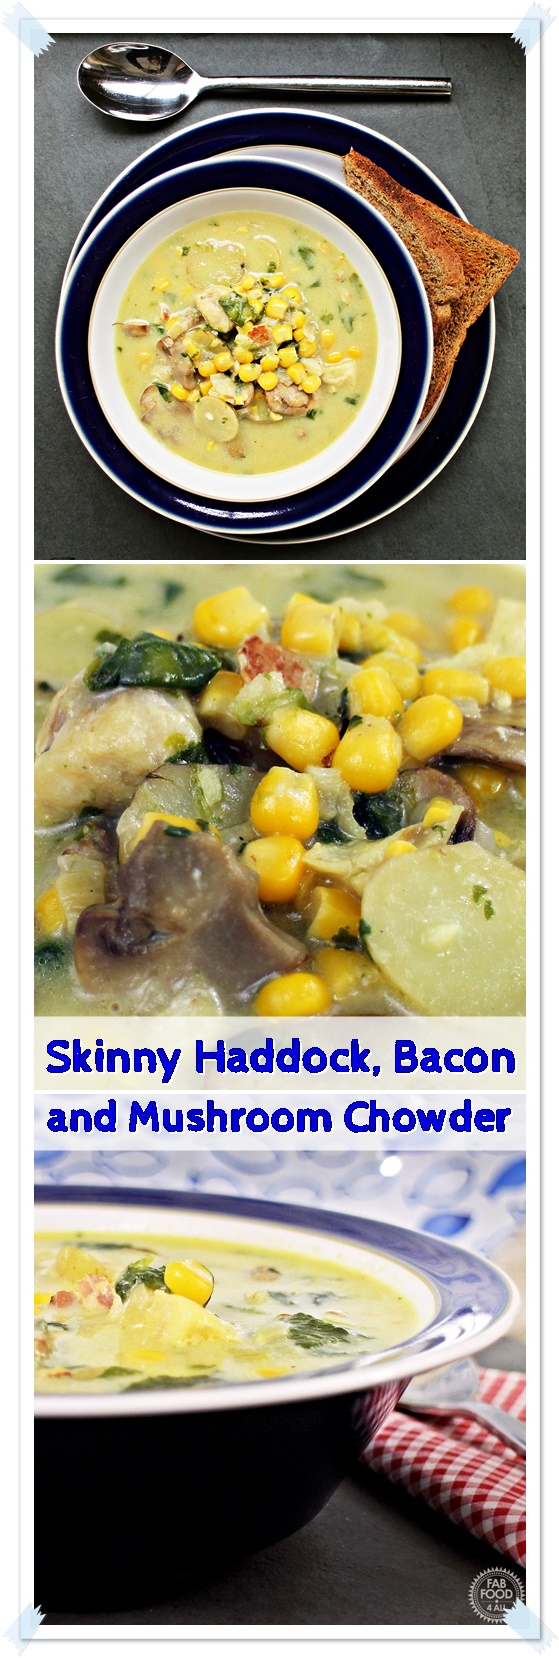 Skinny Haddock, Bacon and Mushroom Chowder - Fab Food 4 All